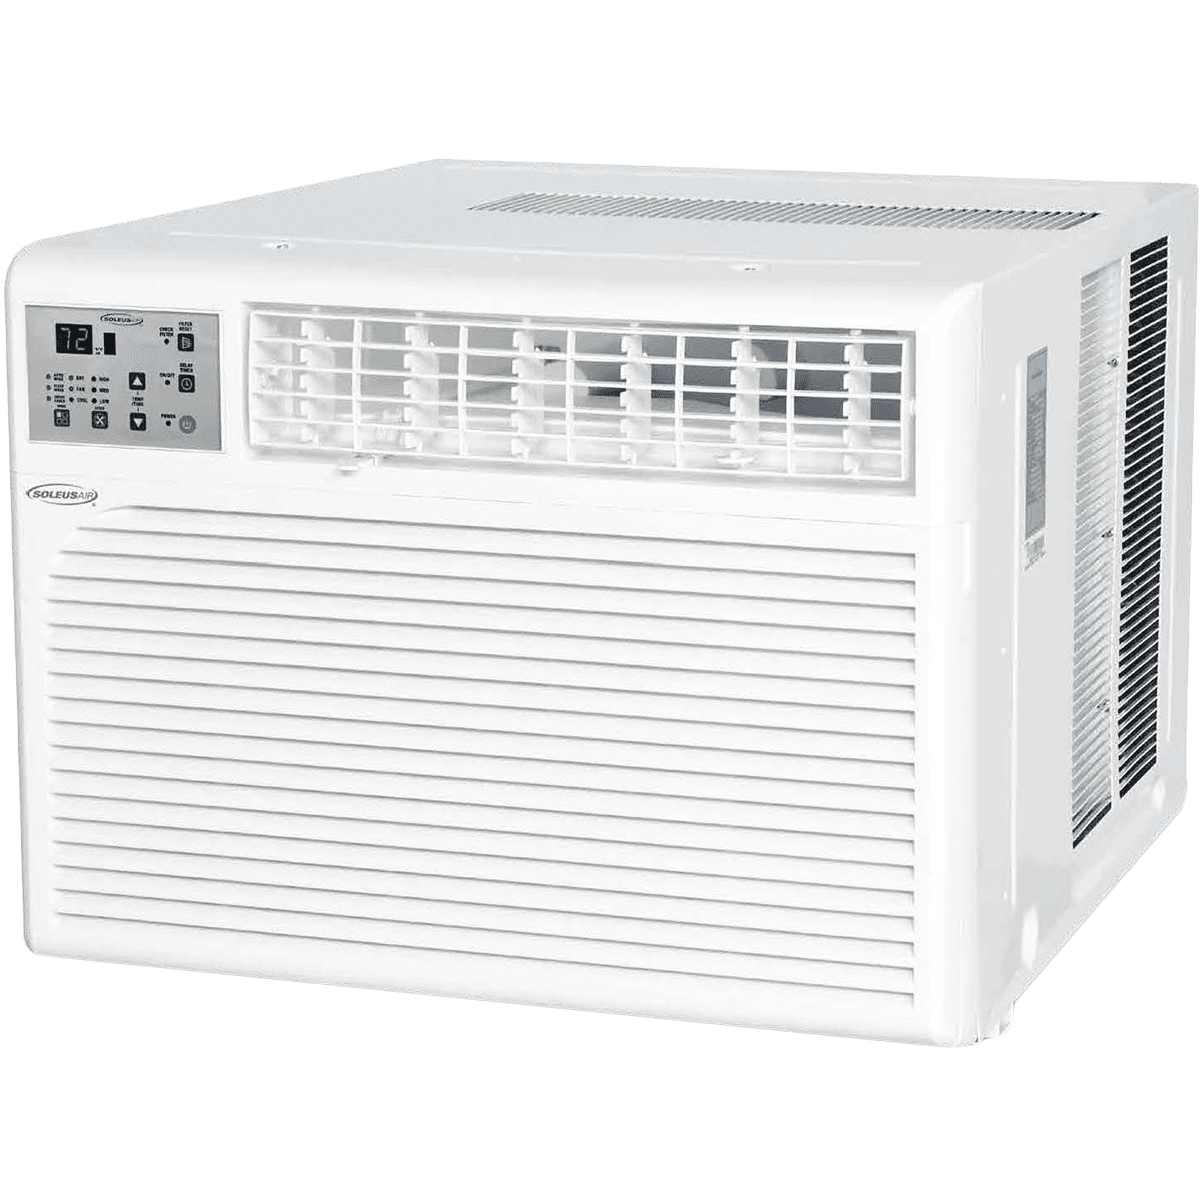 Soleus Air 15,400 Btu Window Air Conditioner (ws-15e-01)